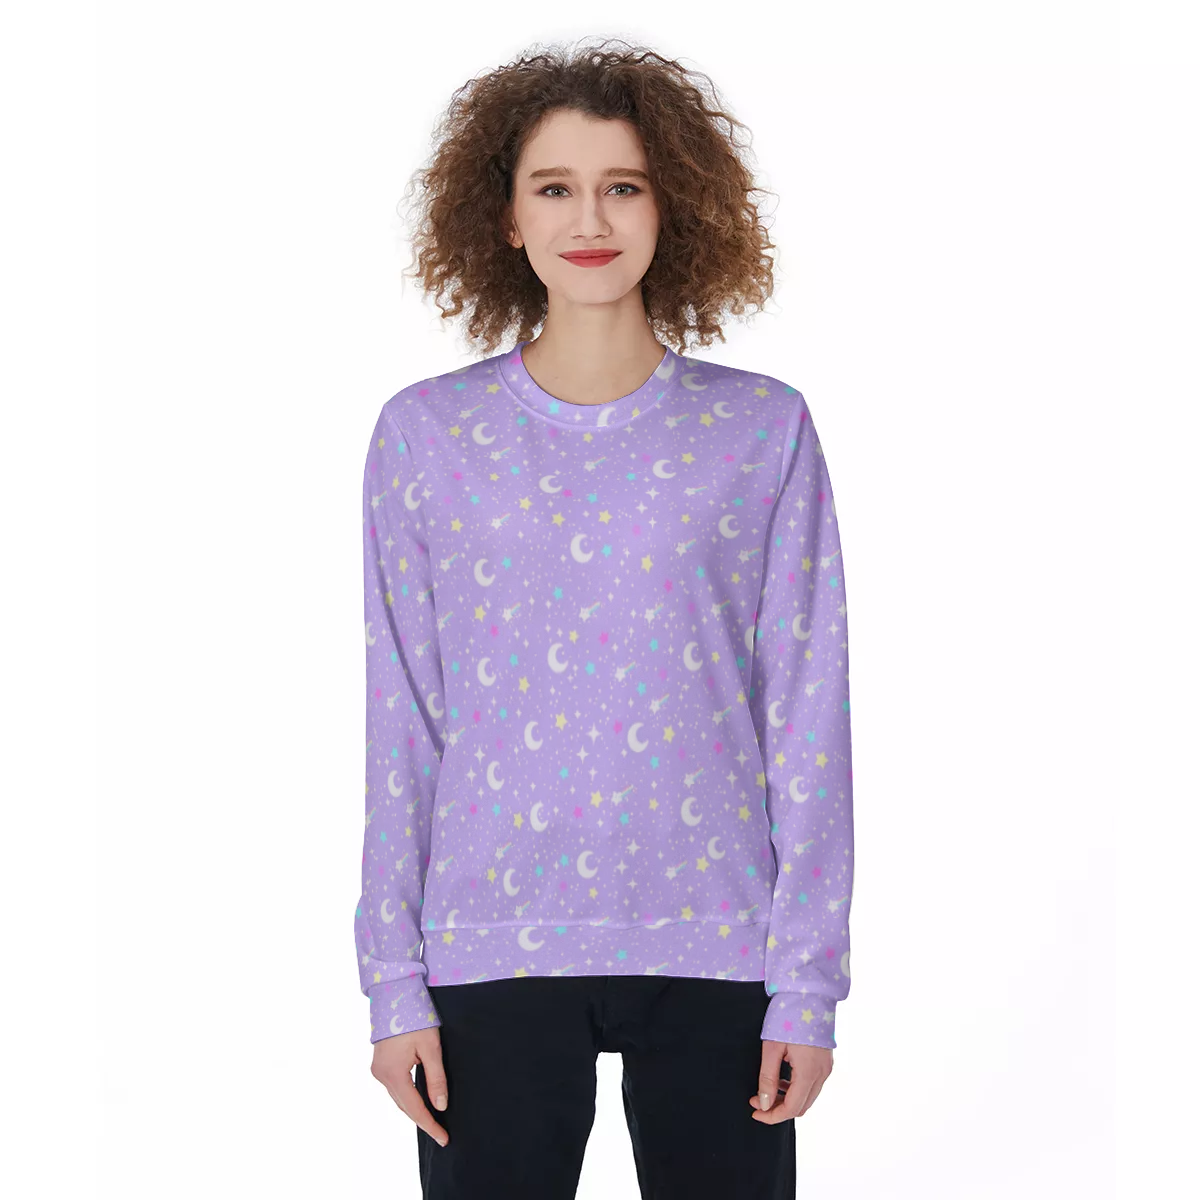 Starry Glitter Purple Unisex Cozy Sweatshirt